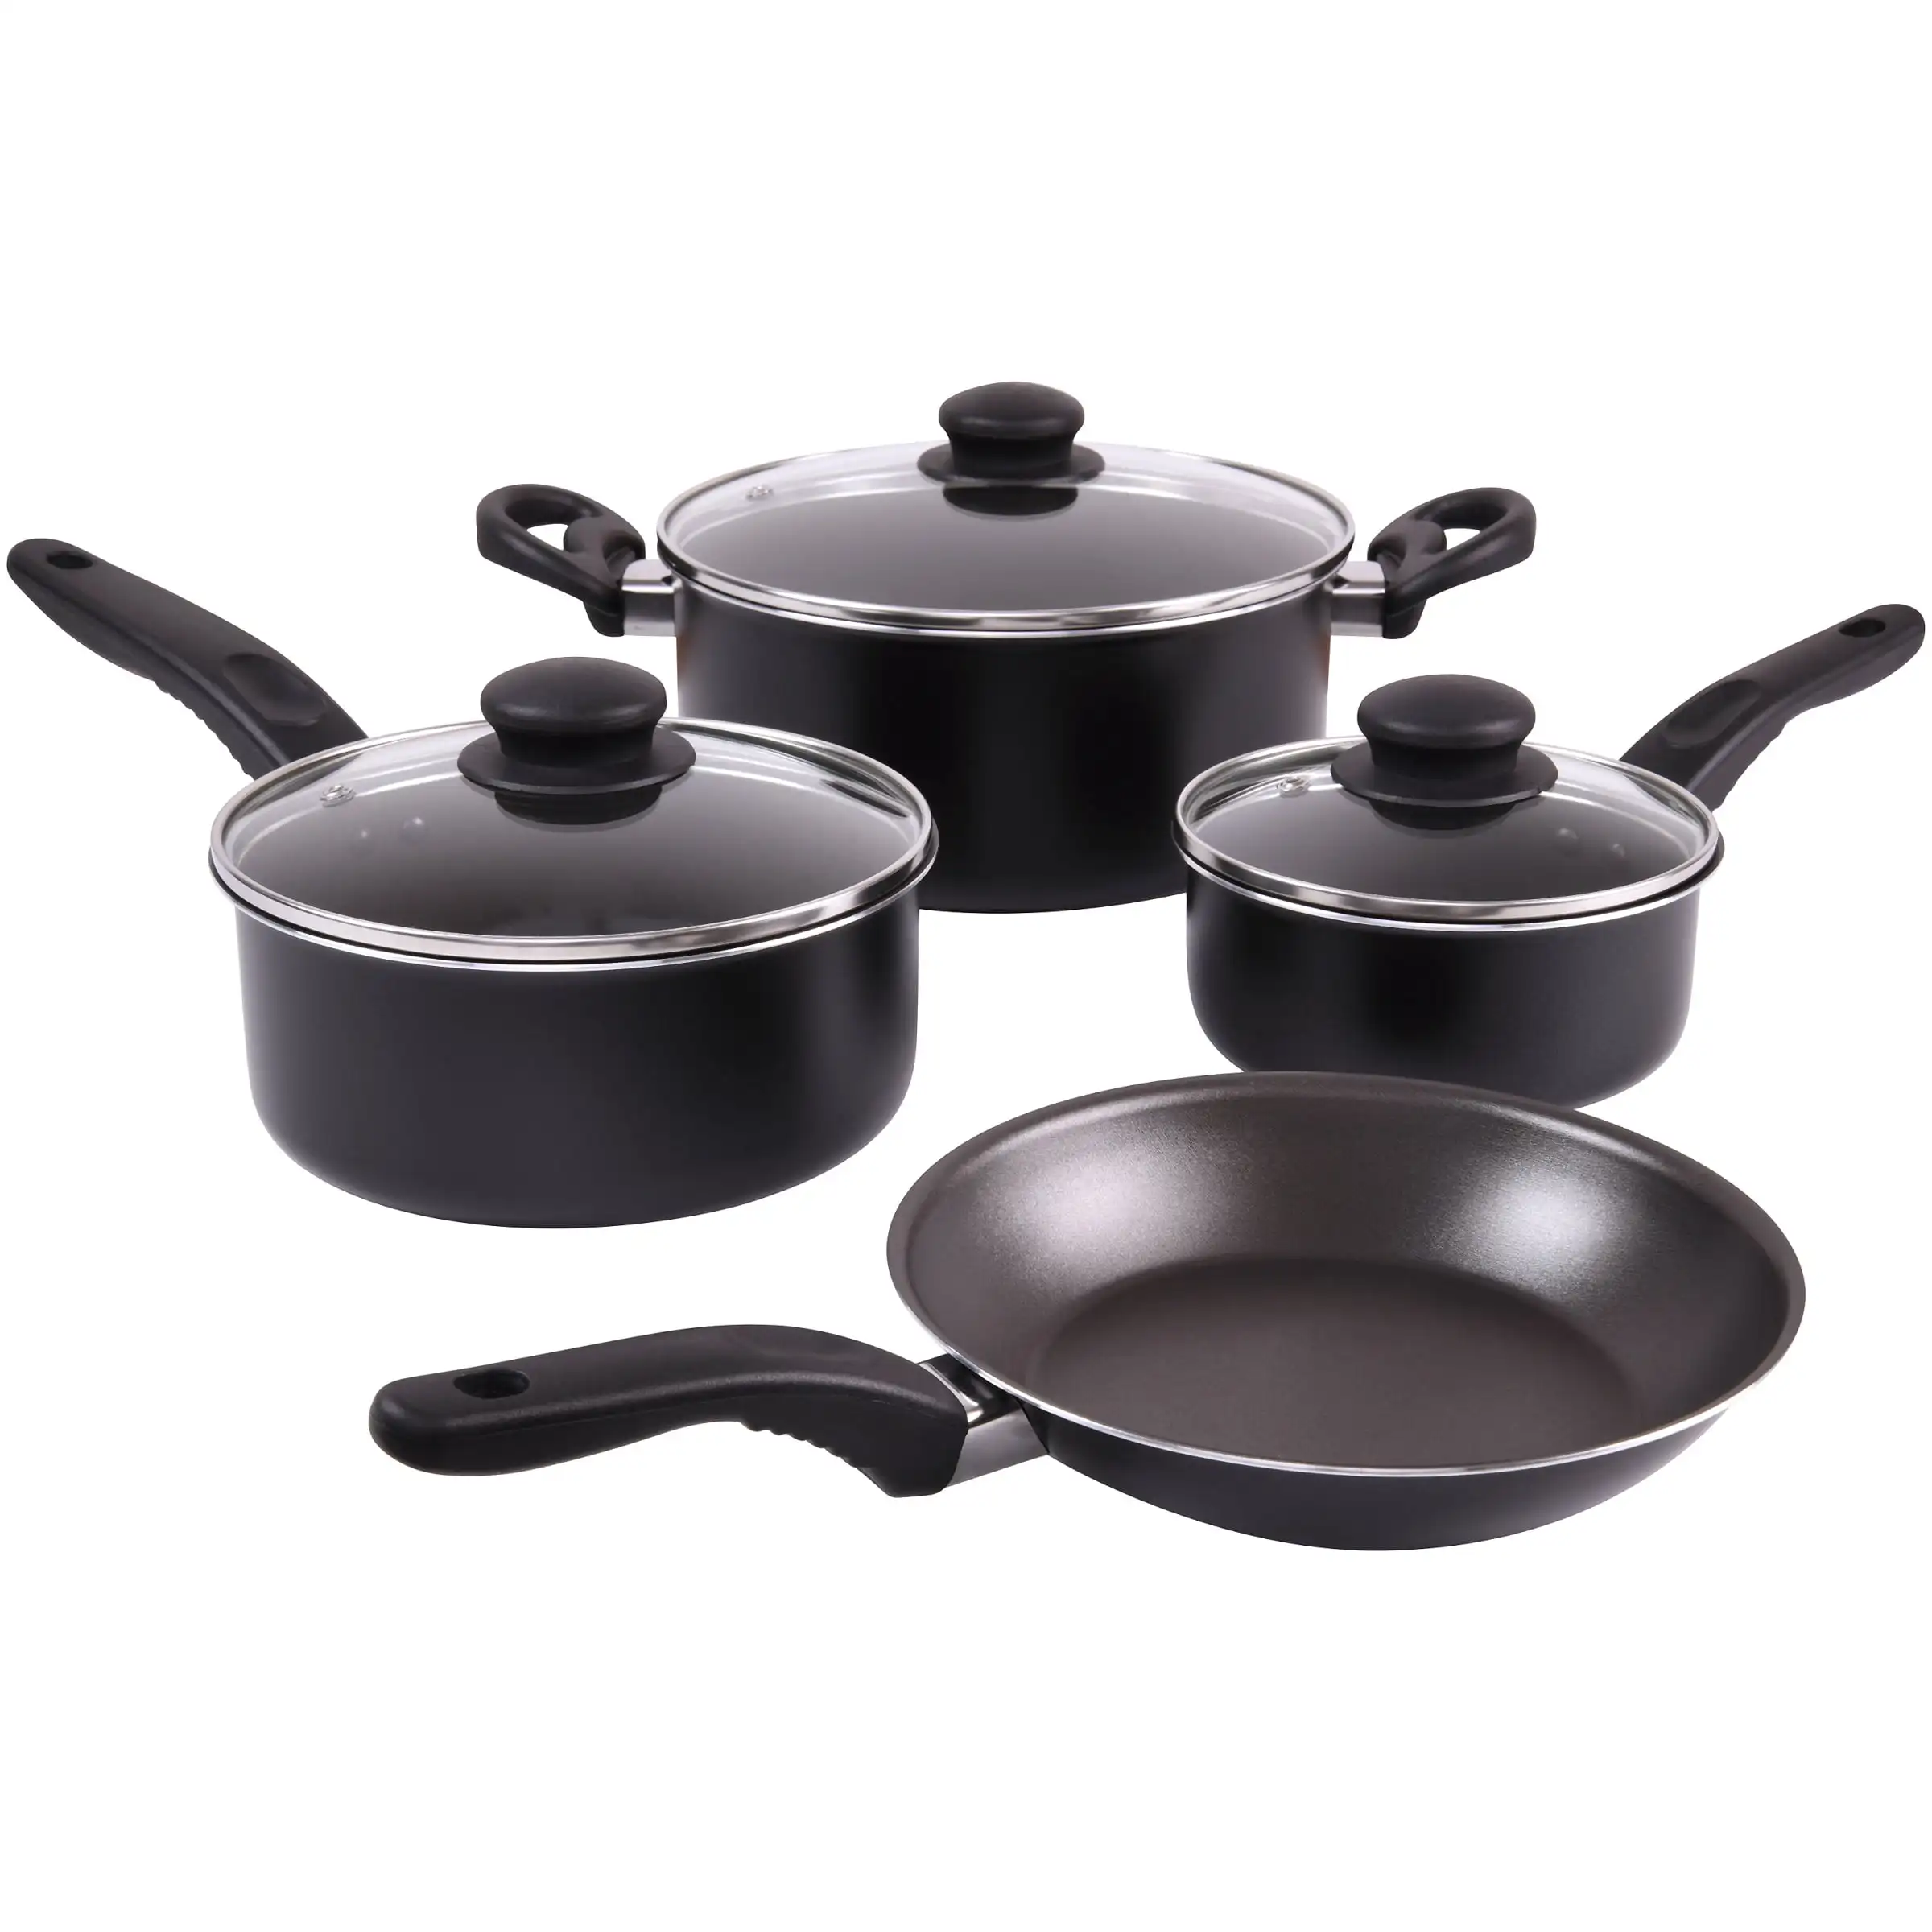 https://ae01.alicdn.com/kf/S1fd71c6fdf654575a1fc9fc134c4a1b8Q/Mainstays-7-Piece-Nonstick-Cookware-Set-Black.jpg